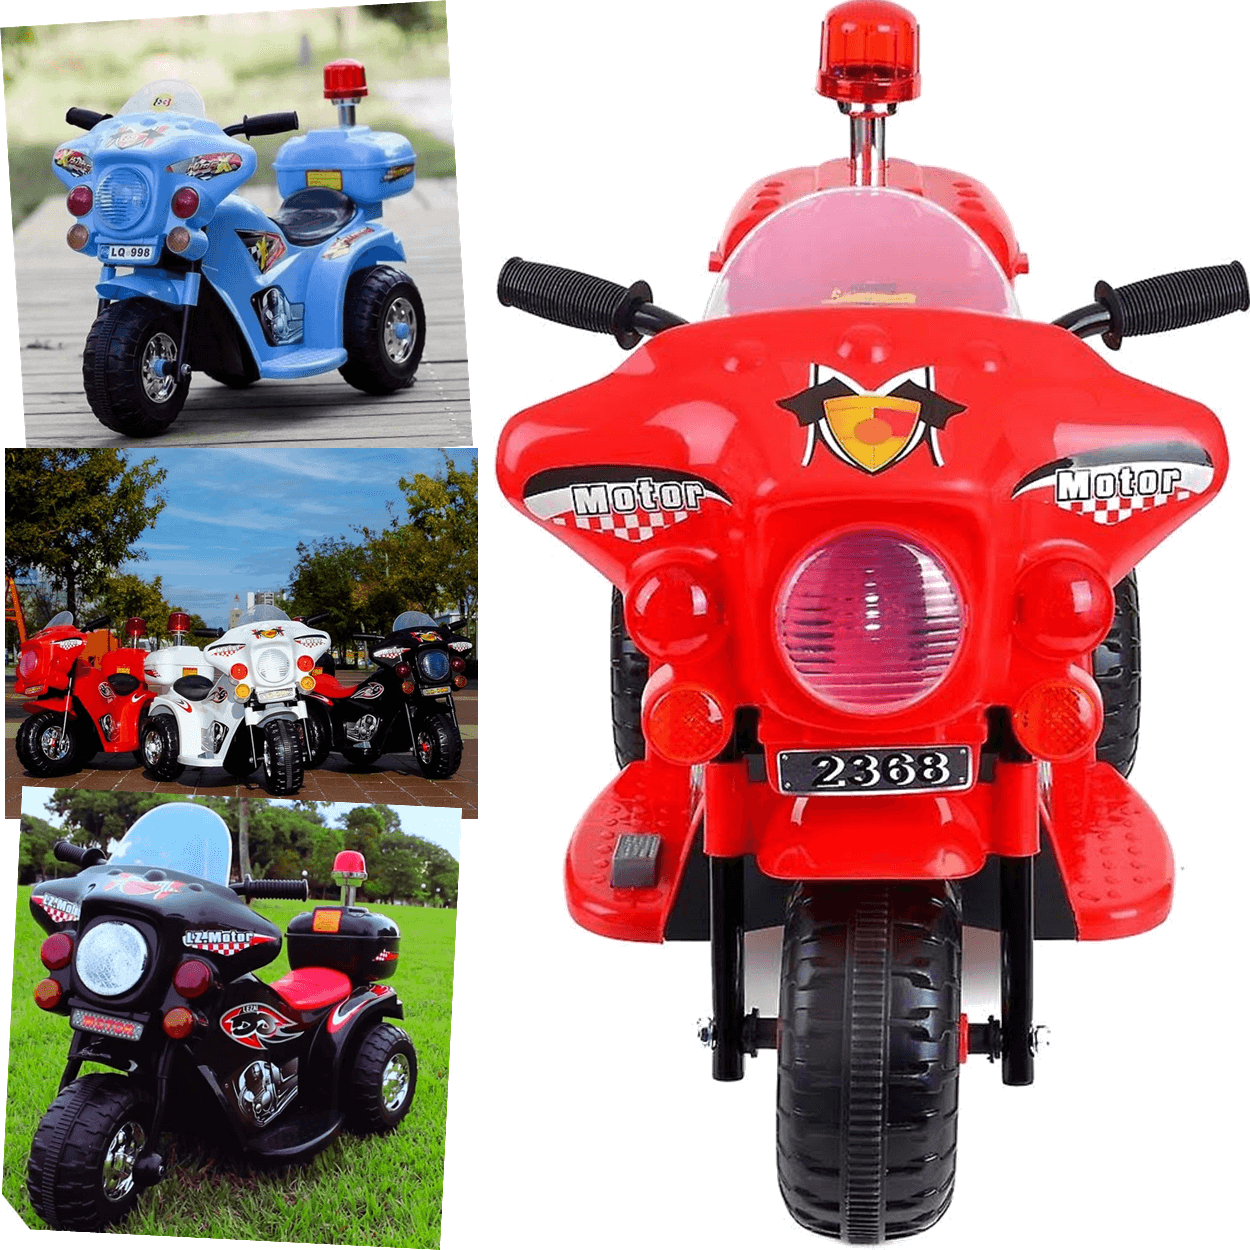 Moto Eletrica Motorcycle Policia Bau Vermelha 6v Zippy Toys - 4